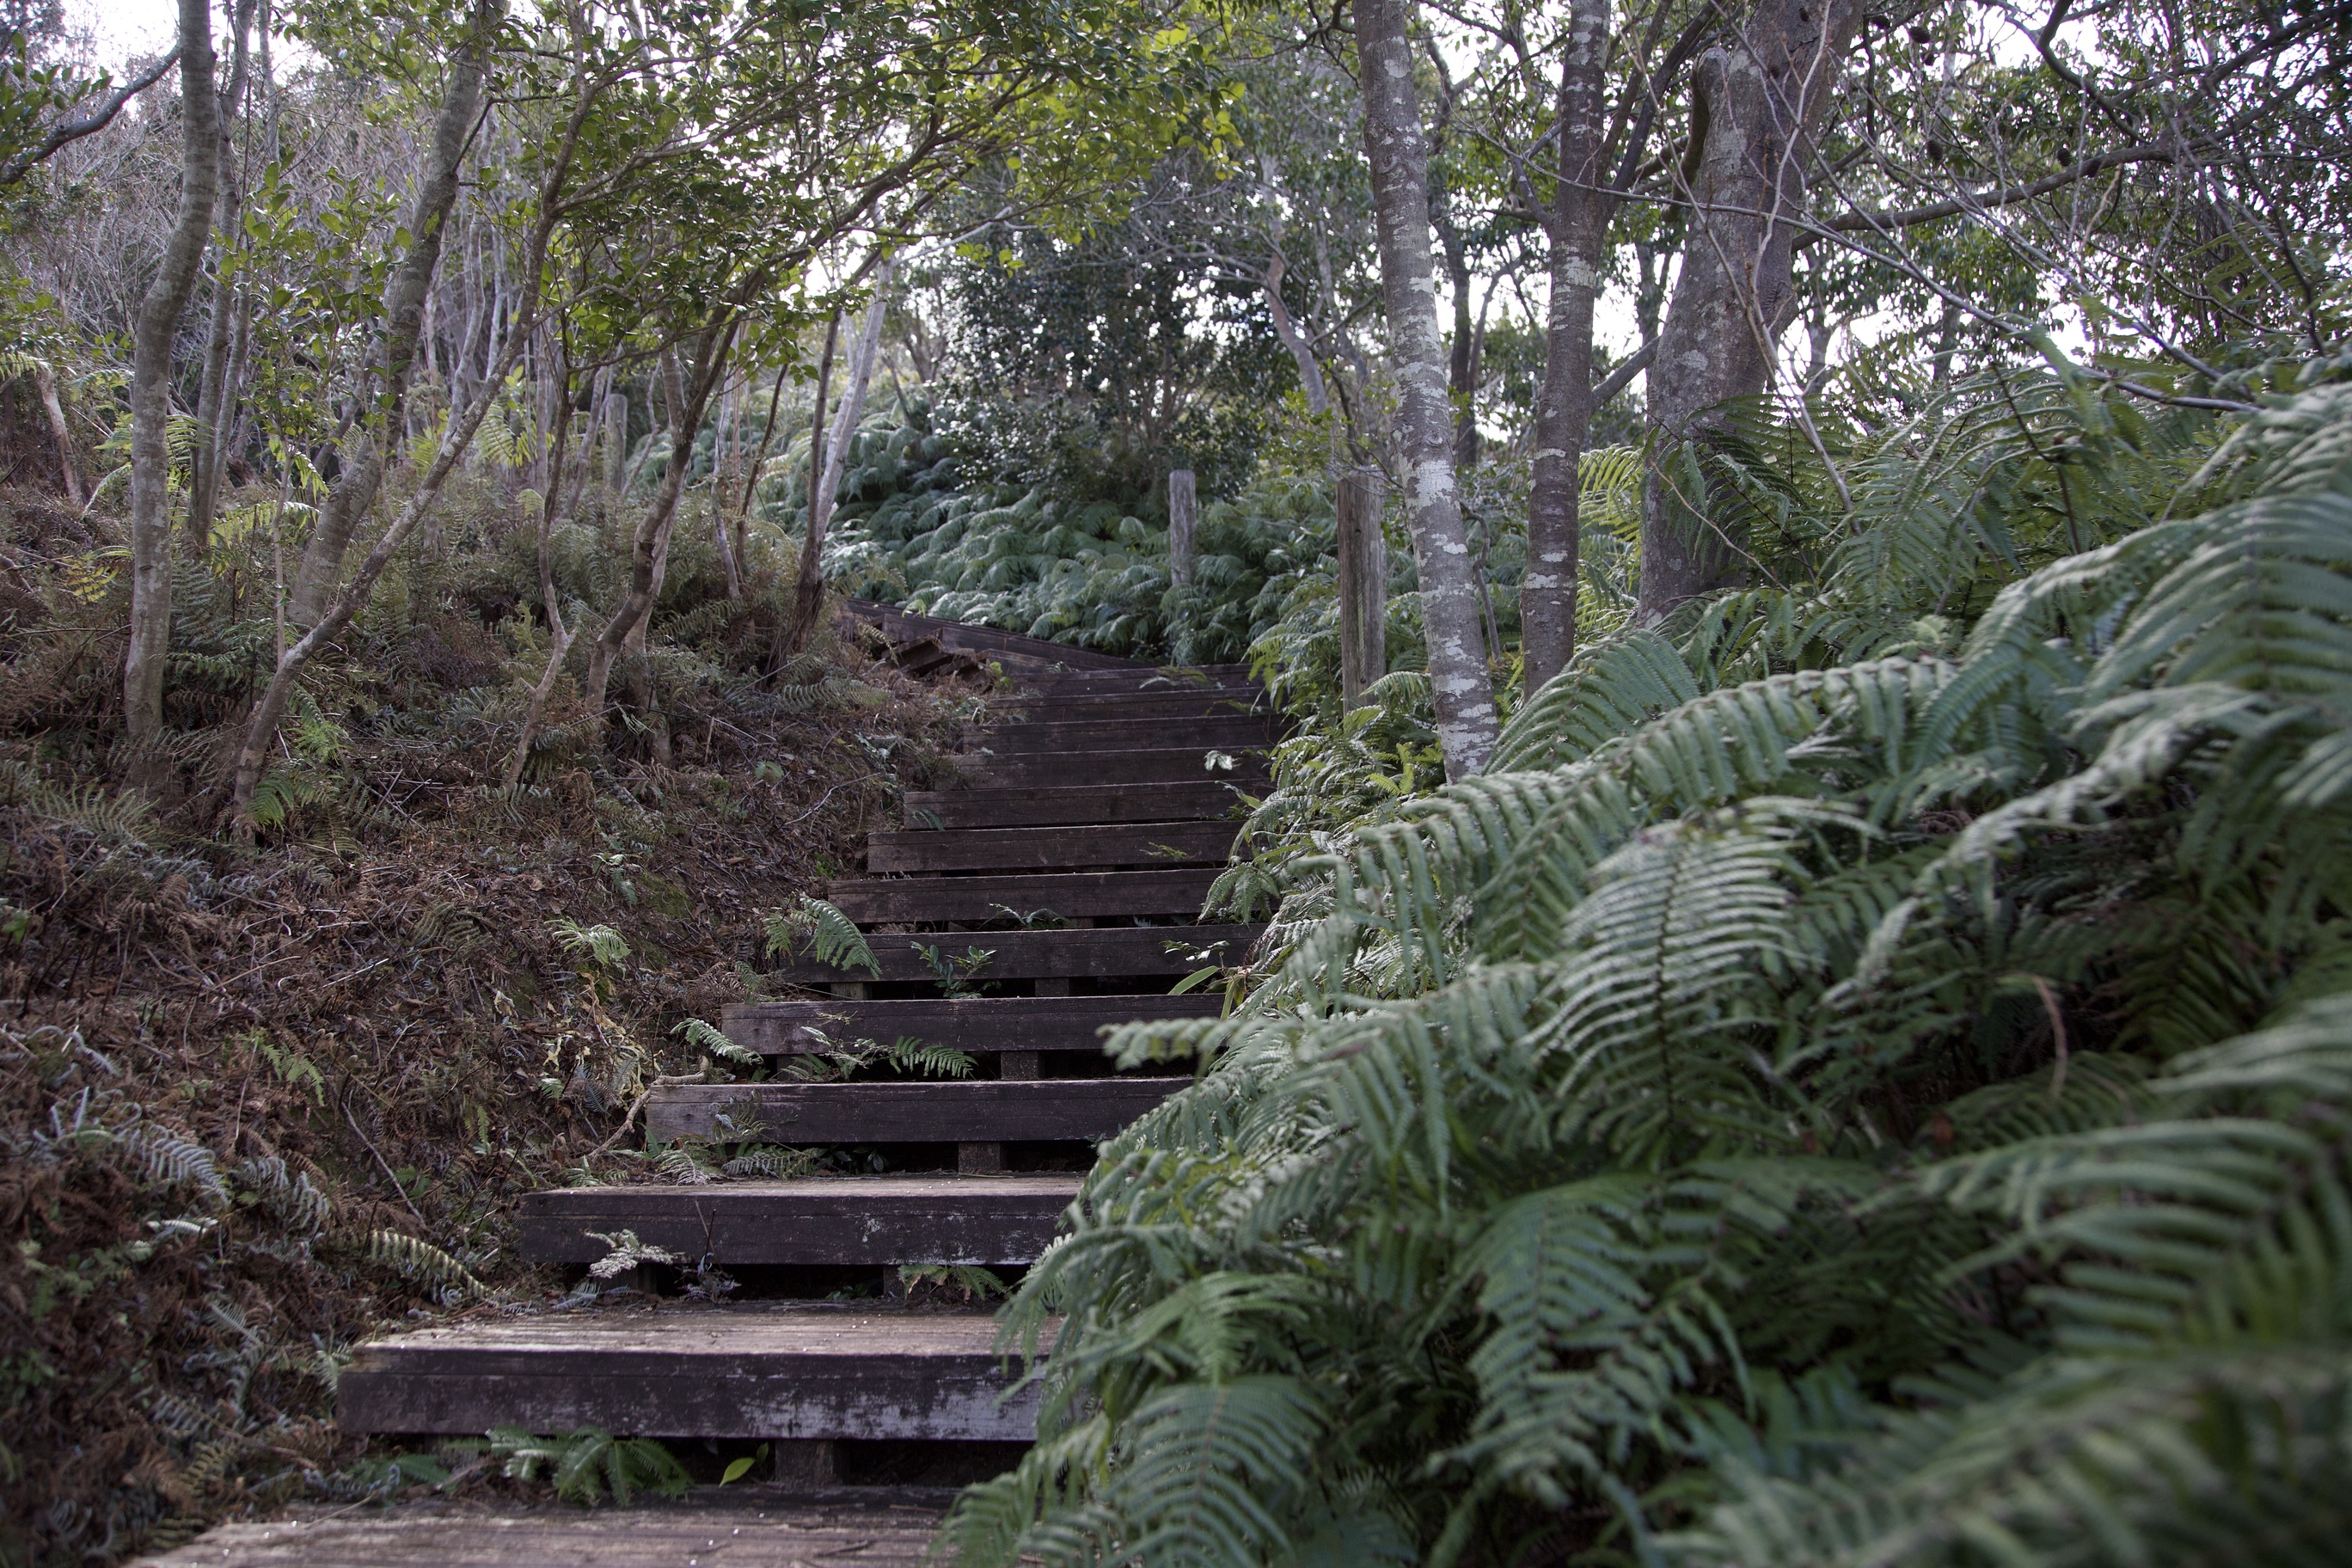 ウラジロとコシダの横を、木製の階段が通っています。この階段は、横山展望台へと続いています。